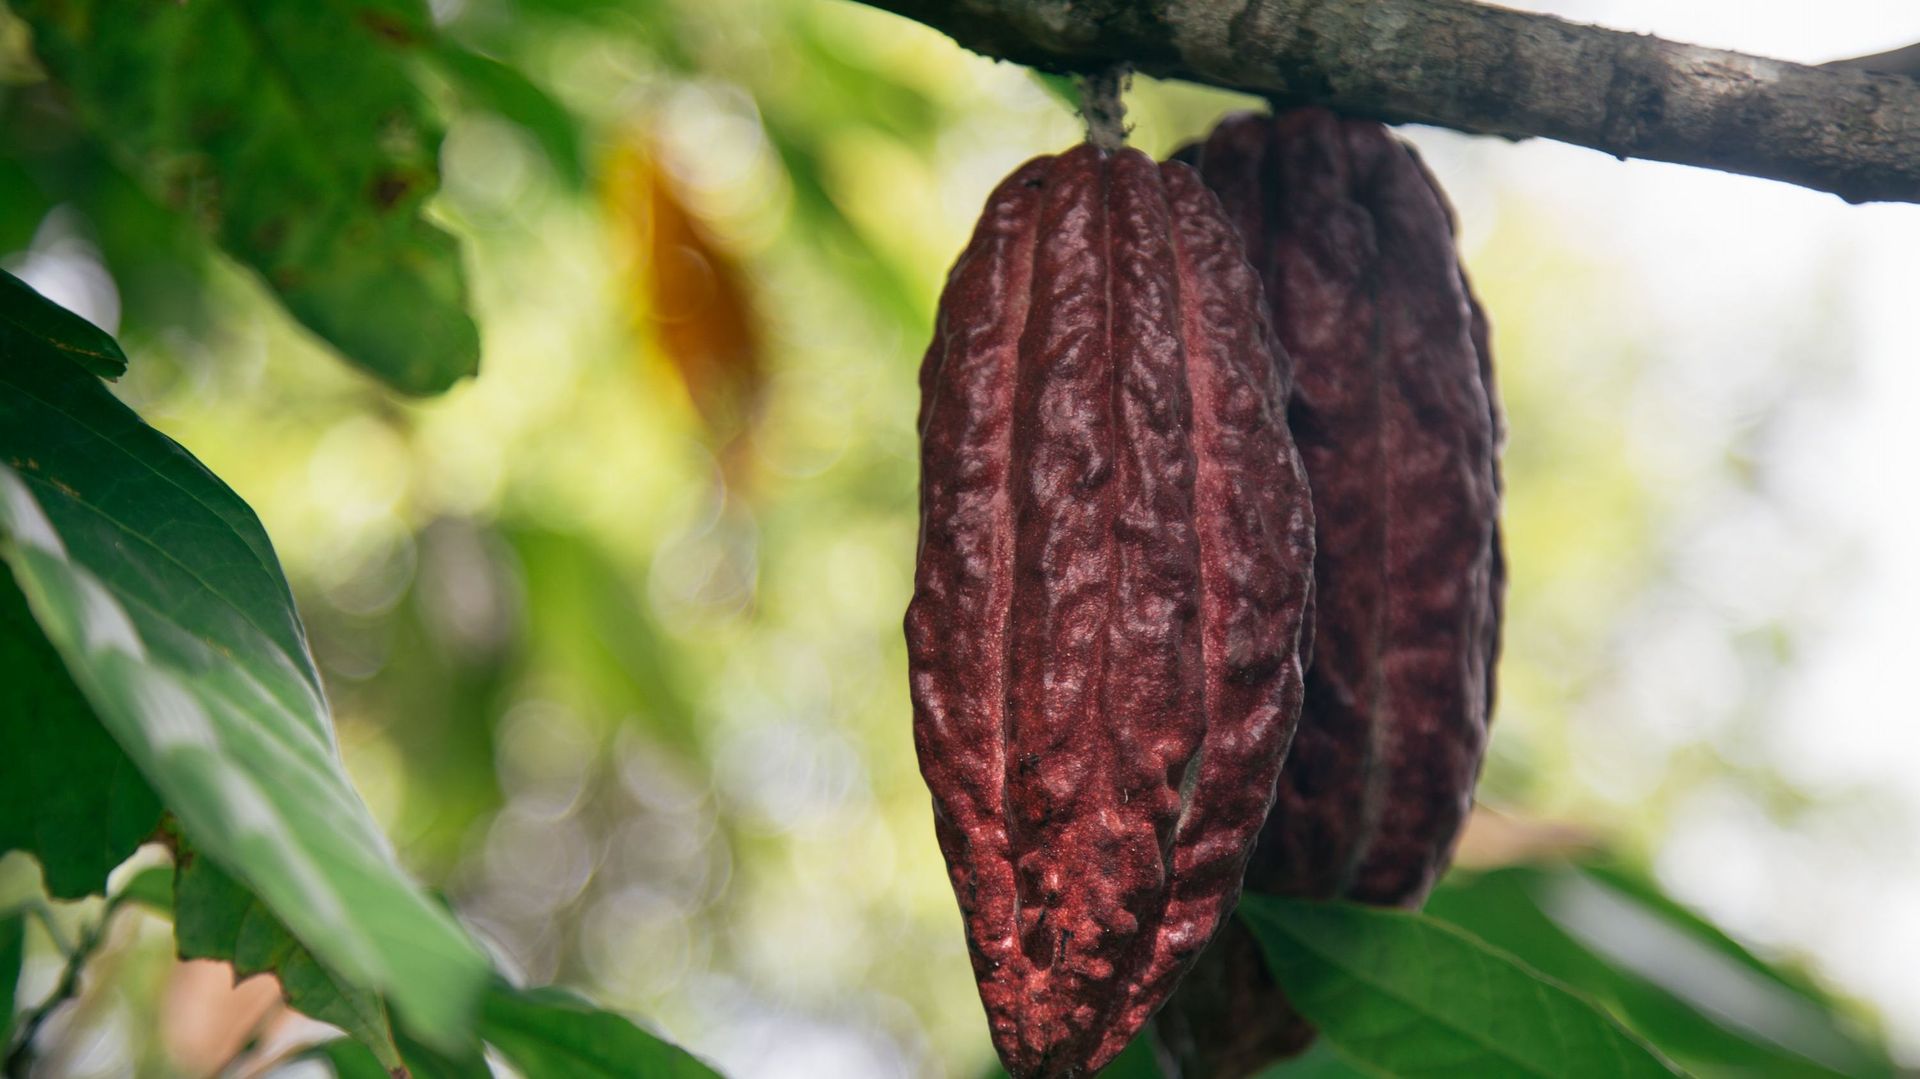 Fondé en 1845, les chocolats Meurisse font leur grand retour avec toute une gamme de produits bio